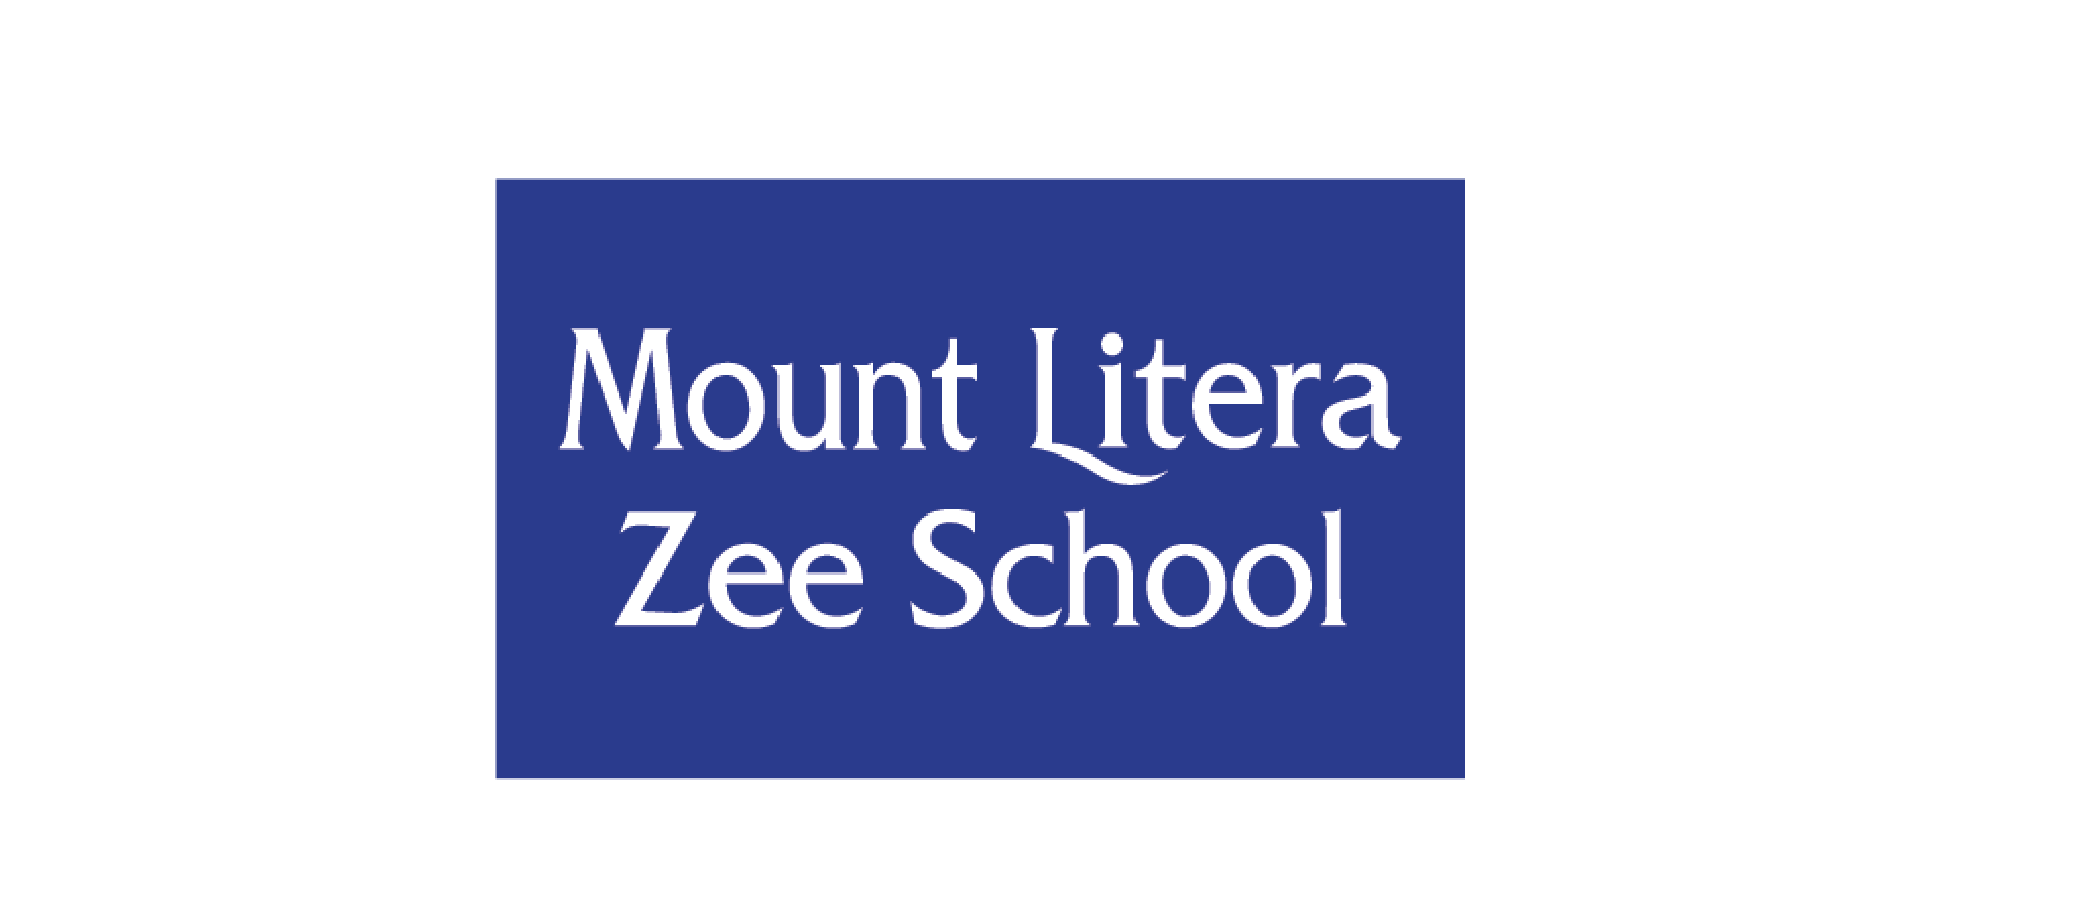 Mount Litera Zee School - Client - DesignPro Digital Agency In Gulbarga